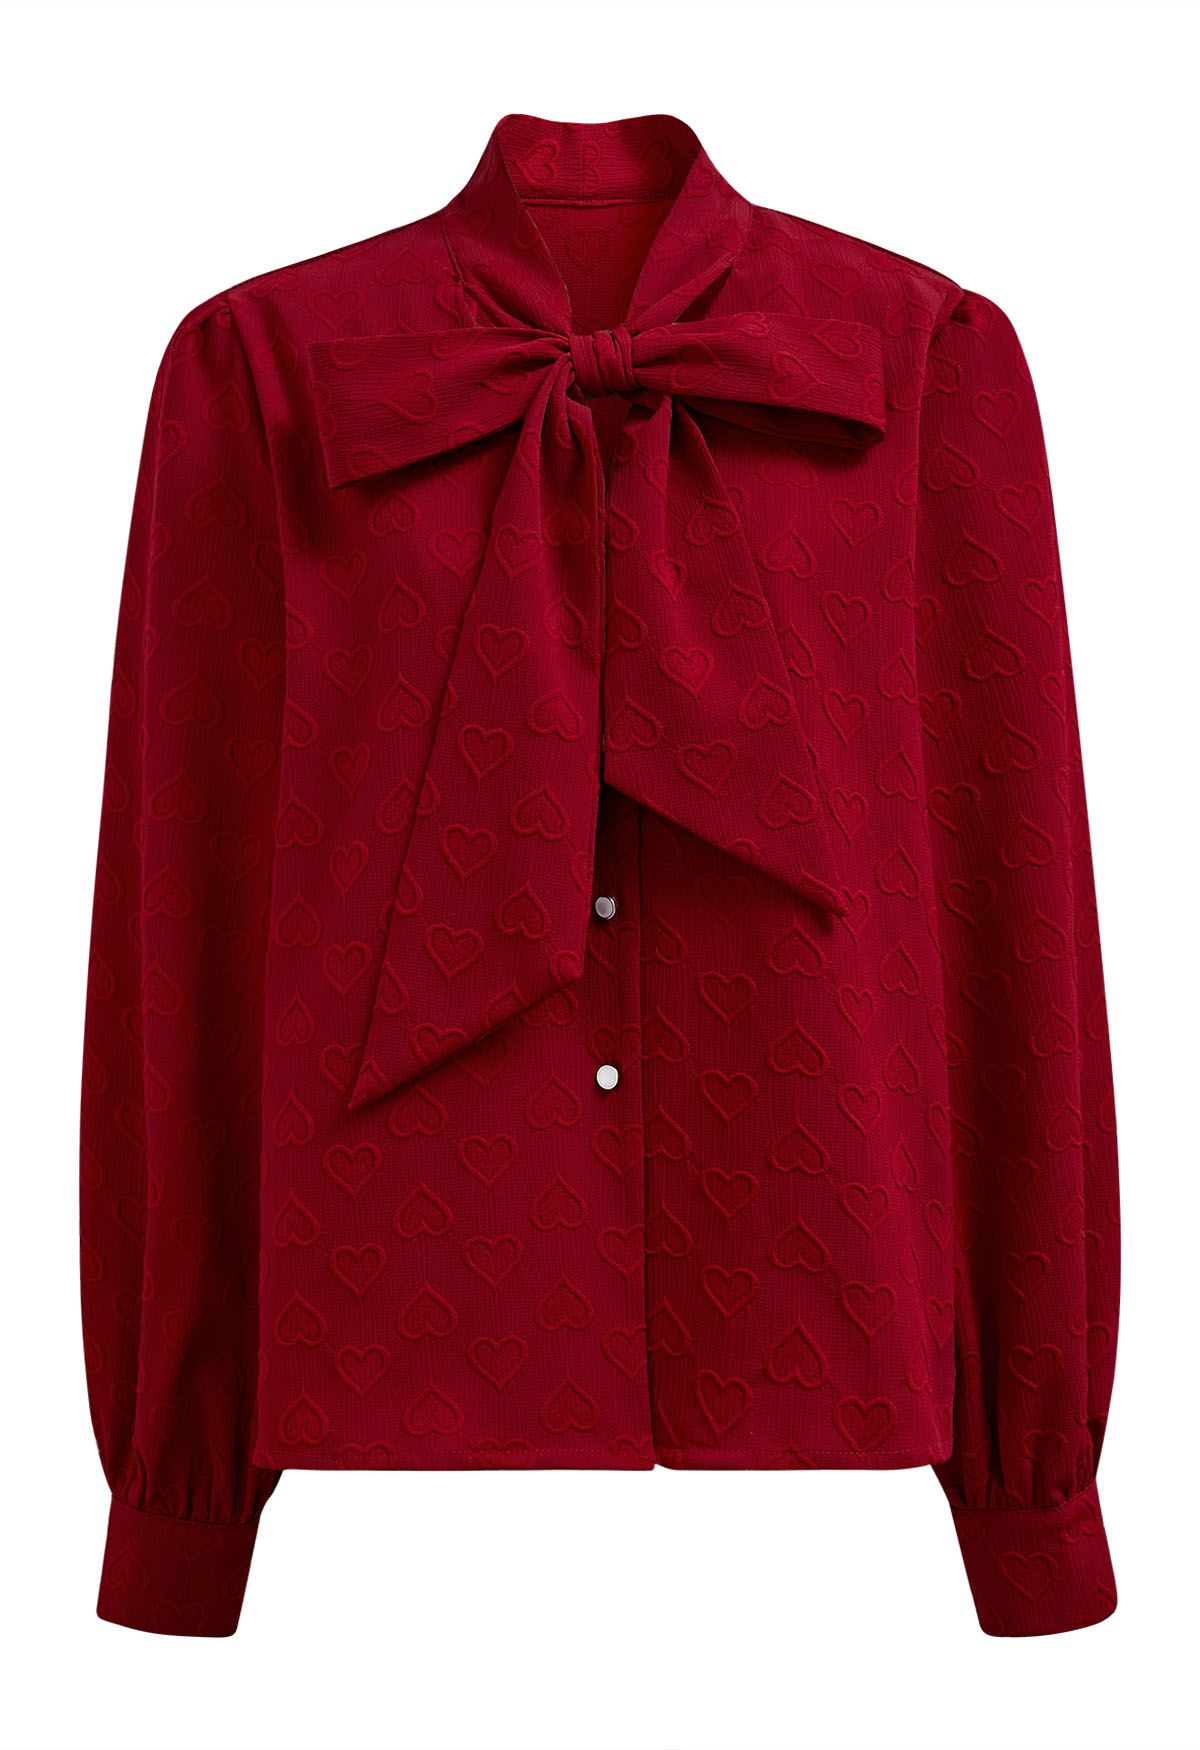 Verträumtes rotes, geknöpftes Hemd mit Schleife und Herzausschnitt